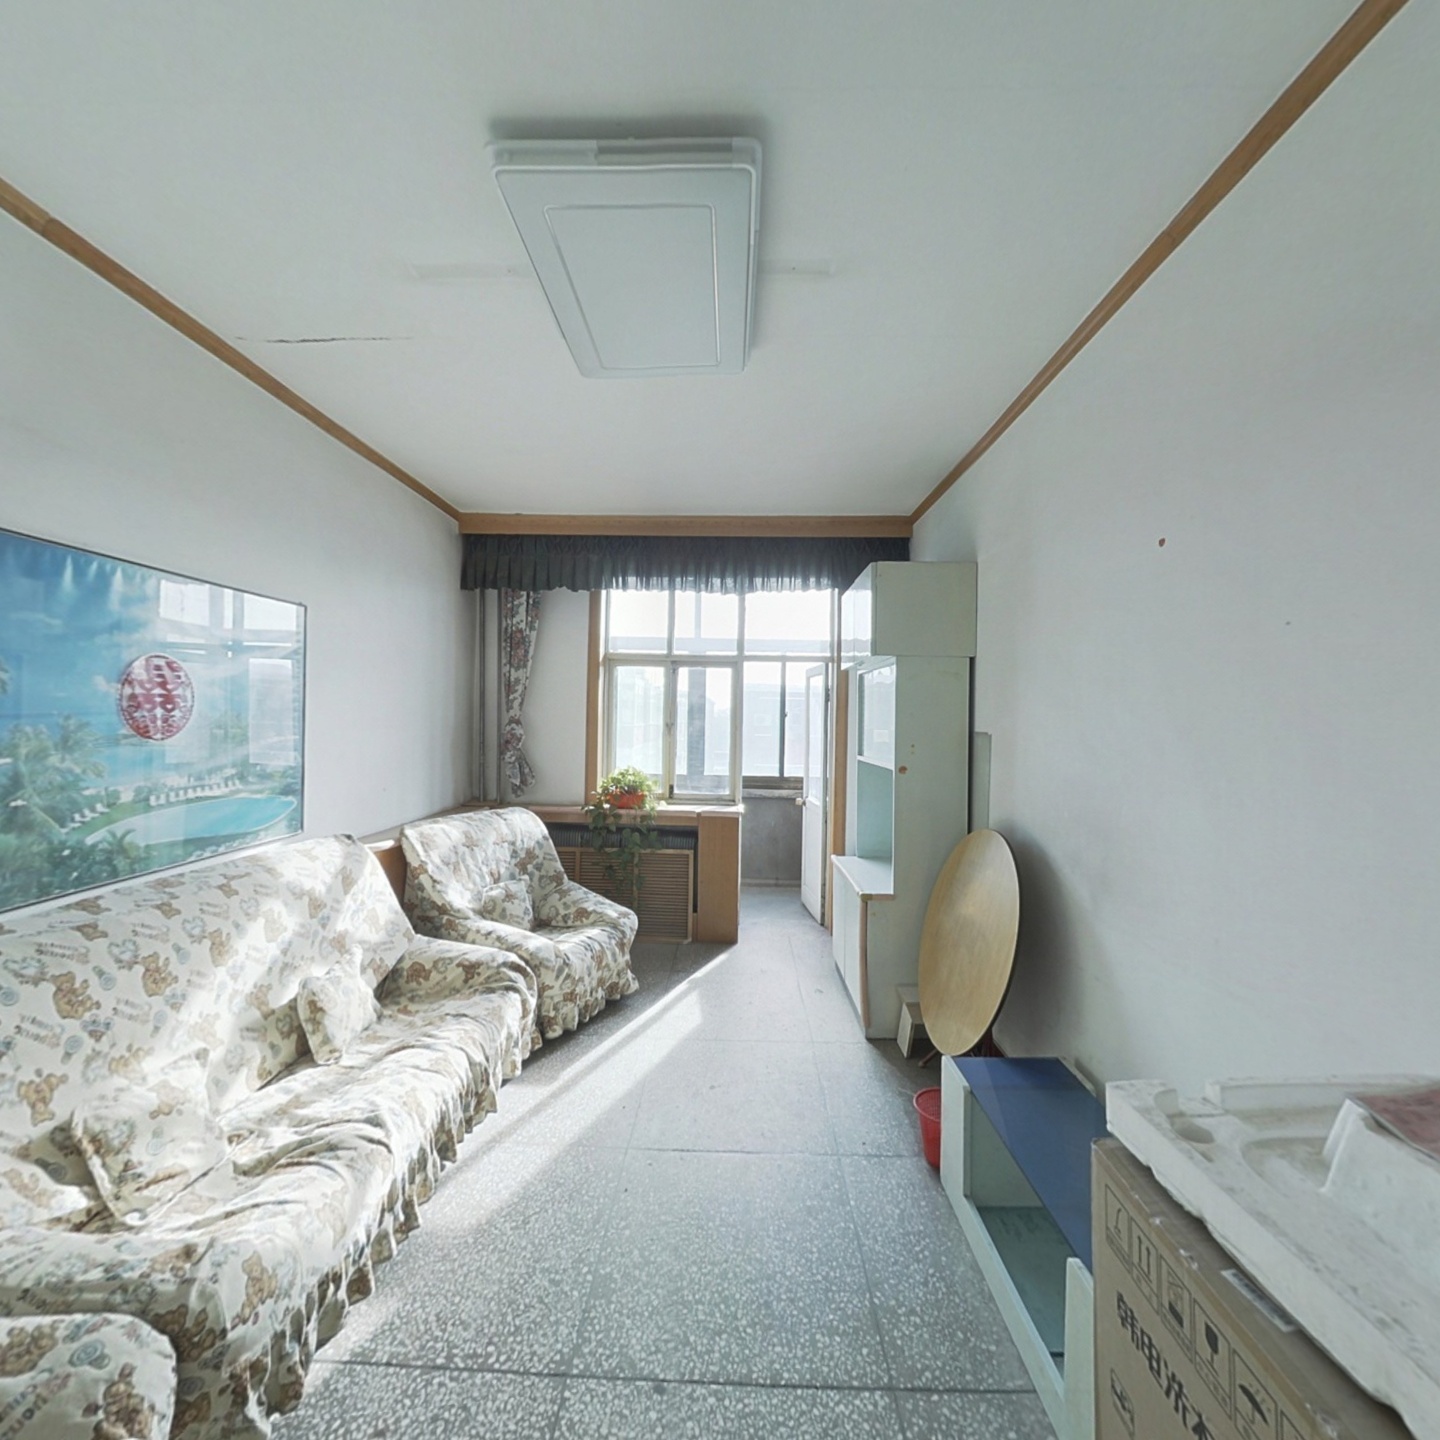 晋阳湖旁低密度社区南北通透两居室方便看房